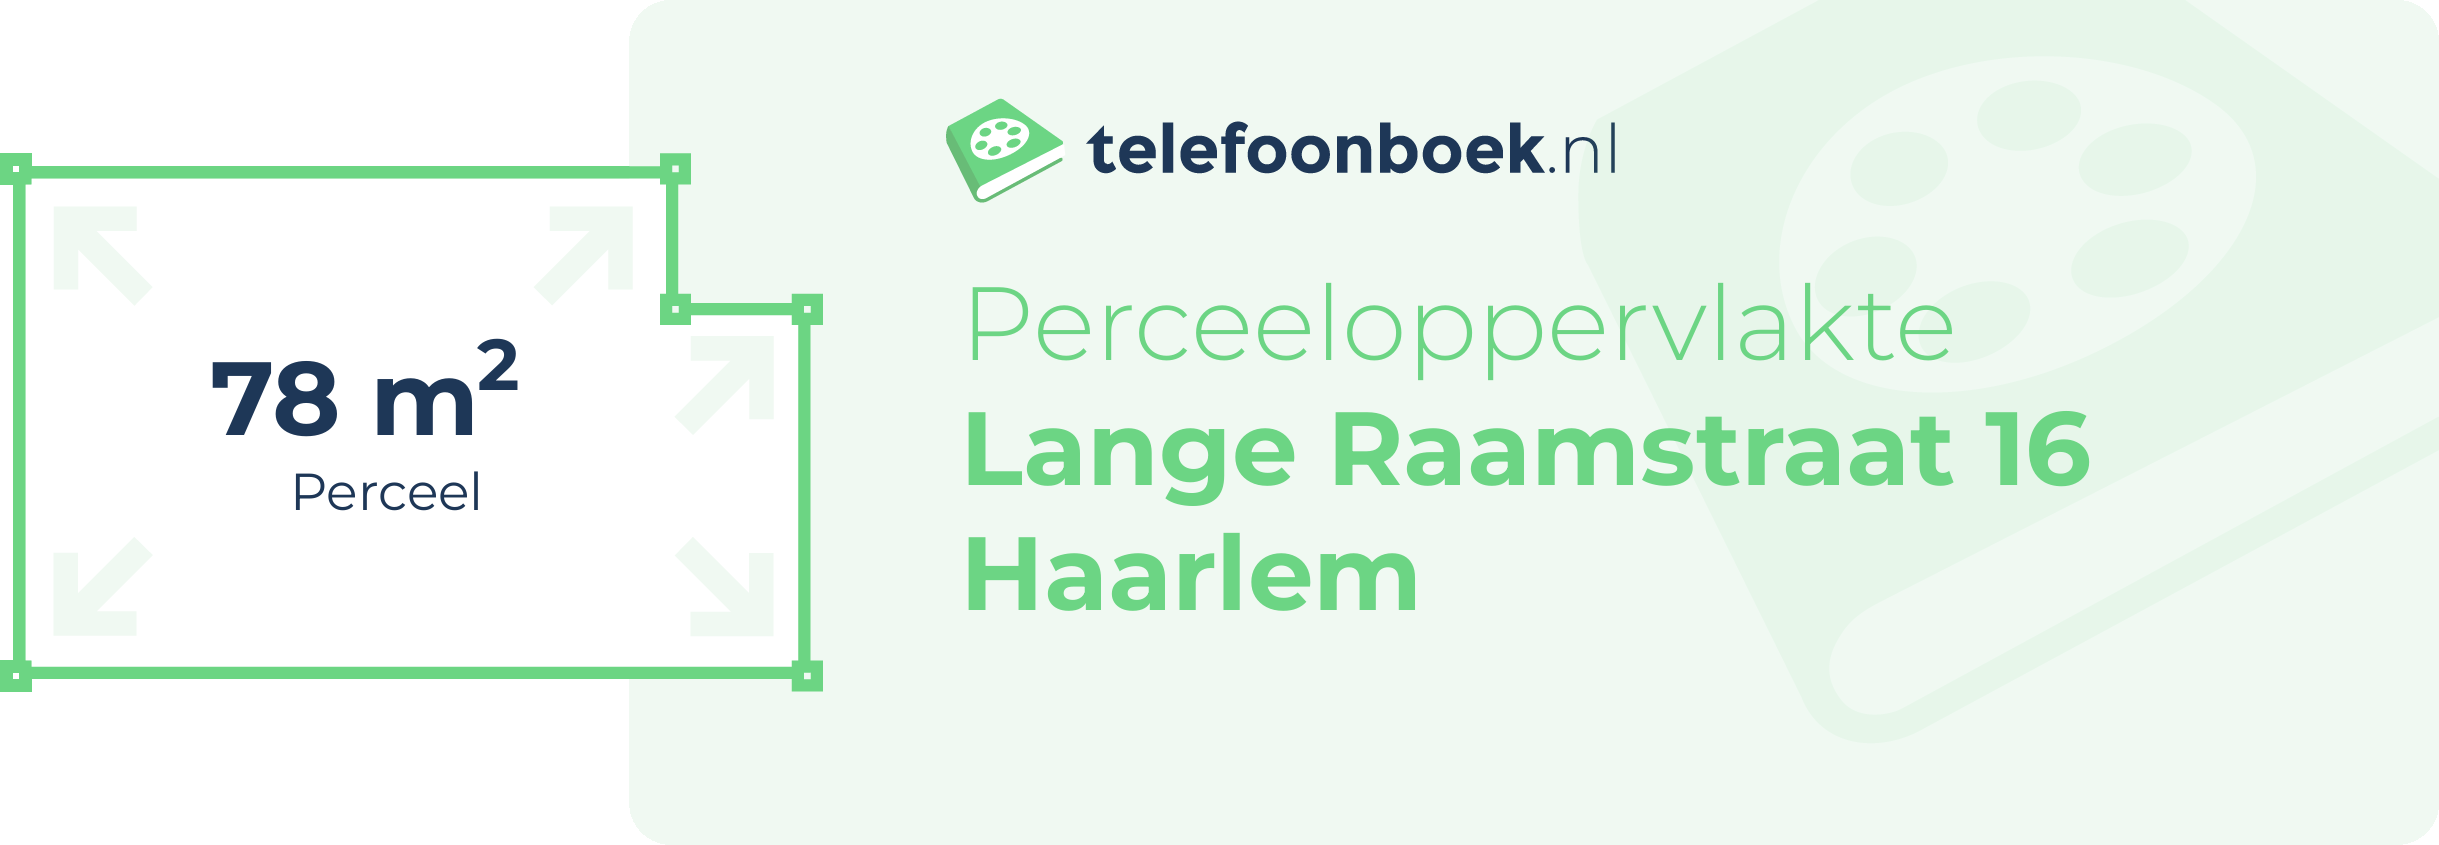 Perceeloppervlakte Lange Raamstraat 16 Haarlem